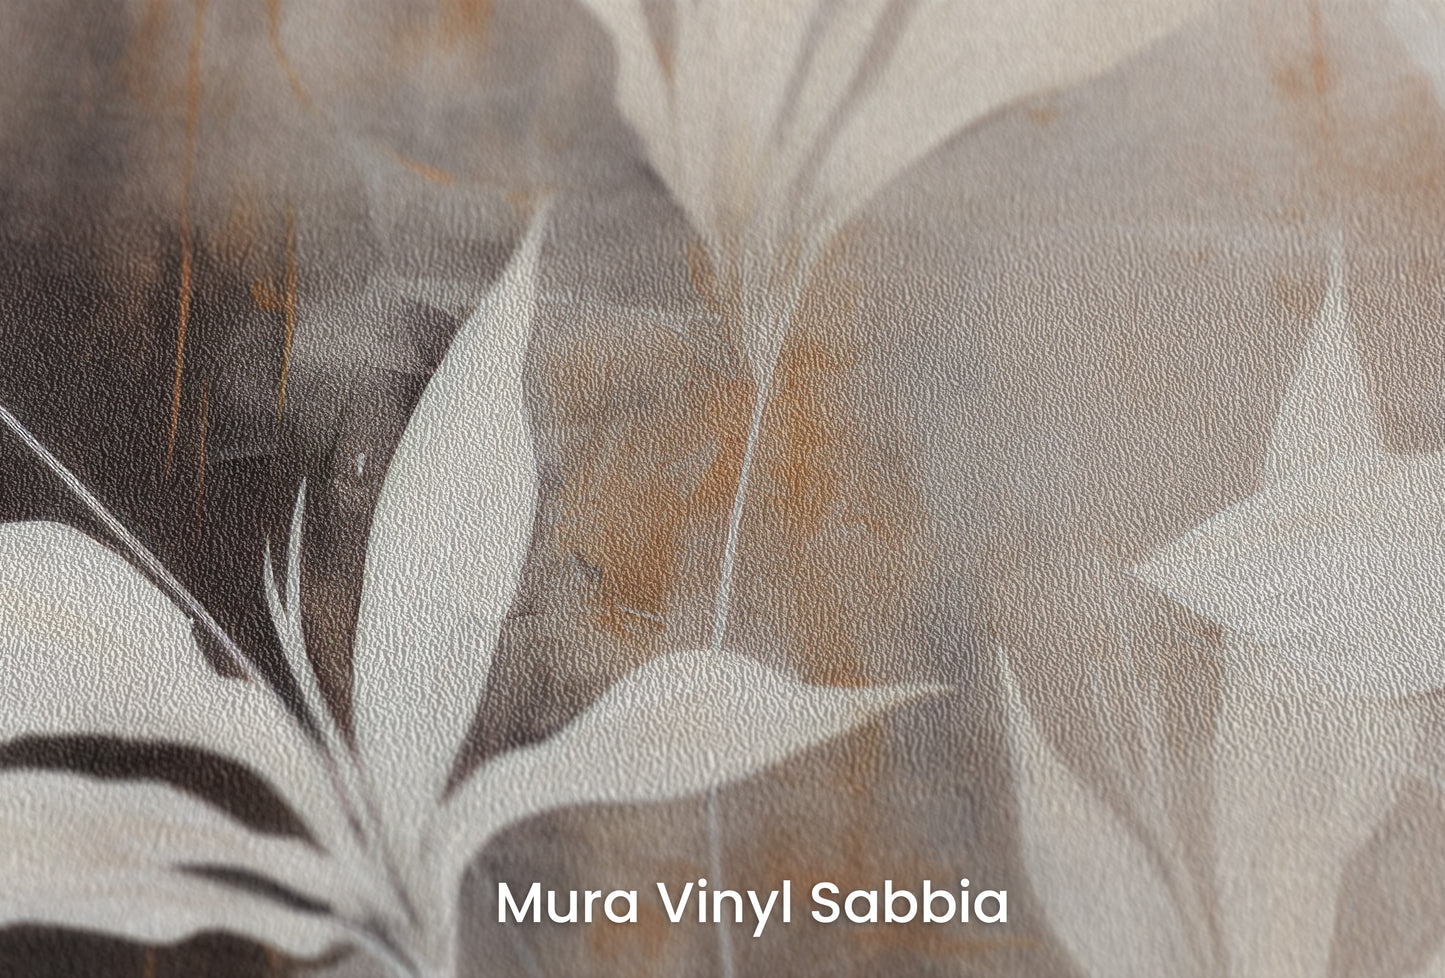 Zbliżenie na artystyczną fototapetę o nazwie Modern Botanicals na podłożu Mura Vinyl Sabbia struktura grubego ziarna piasku.